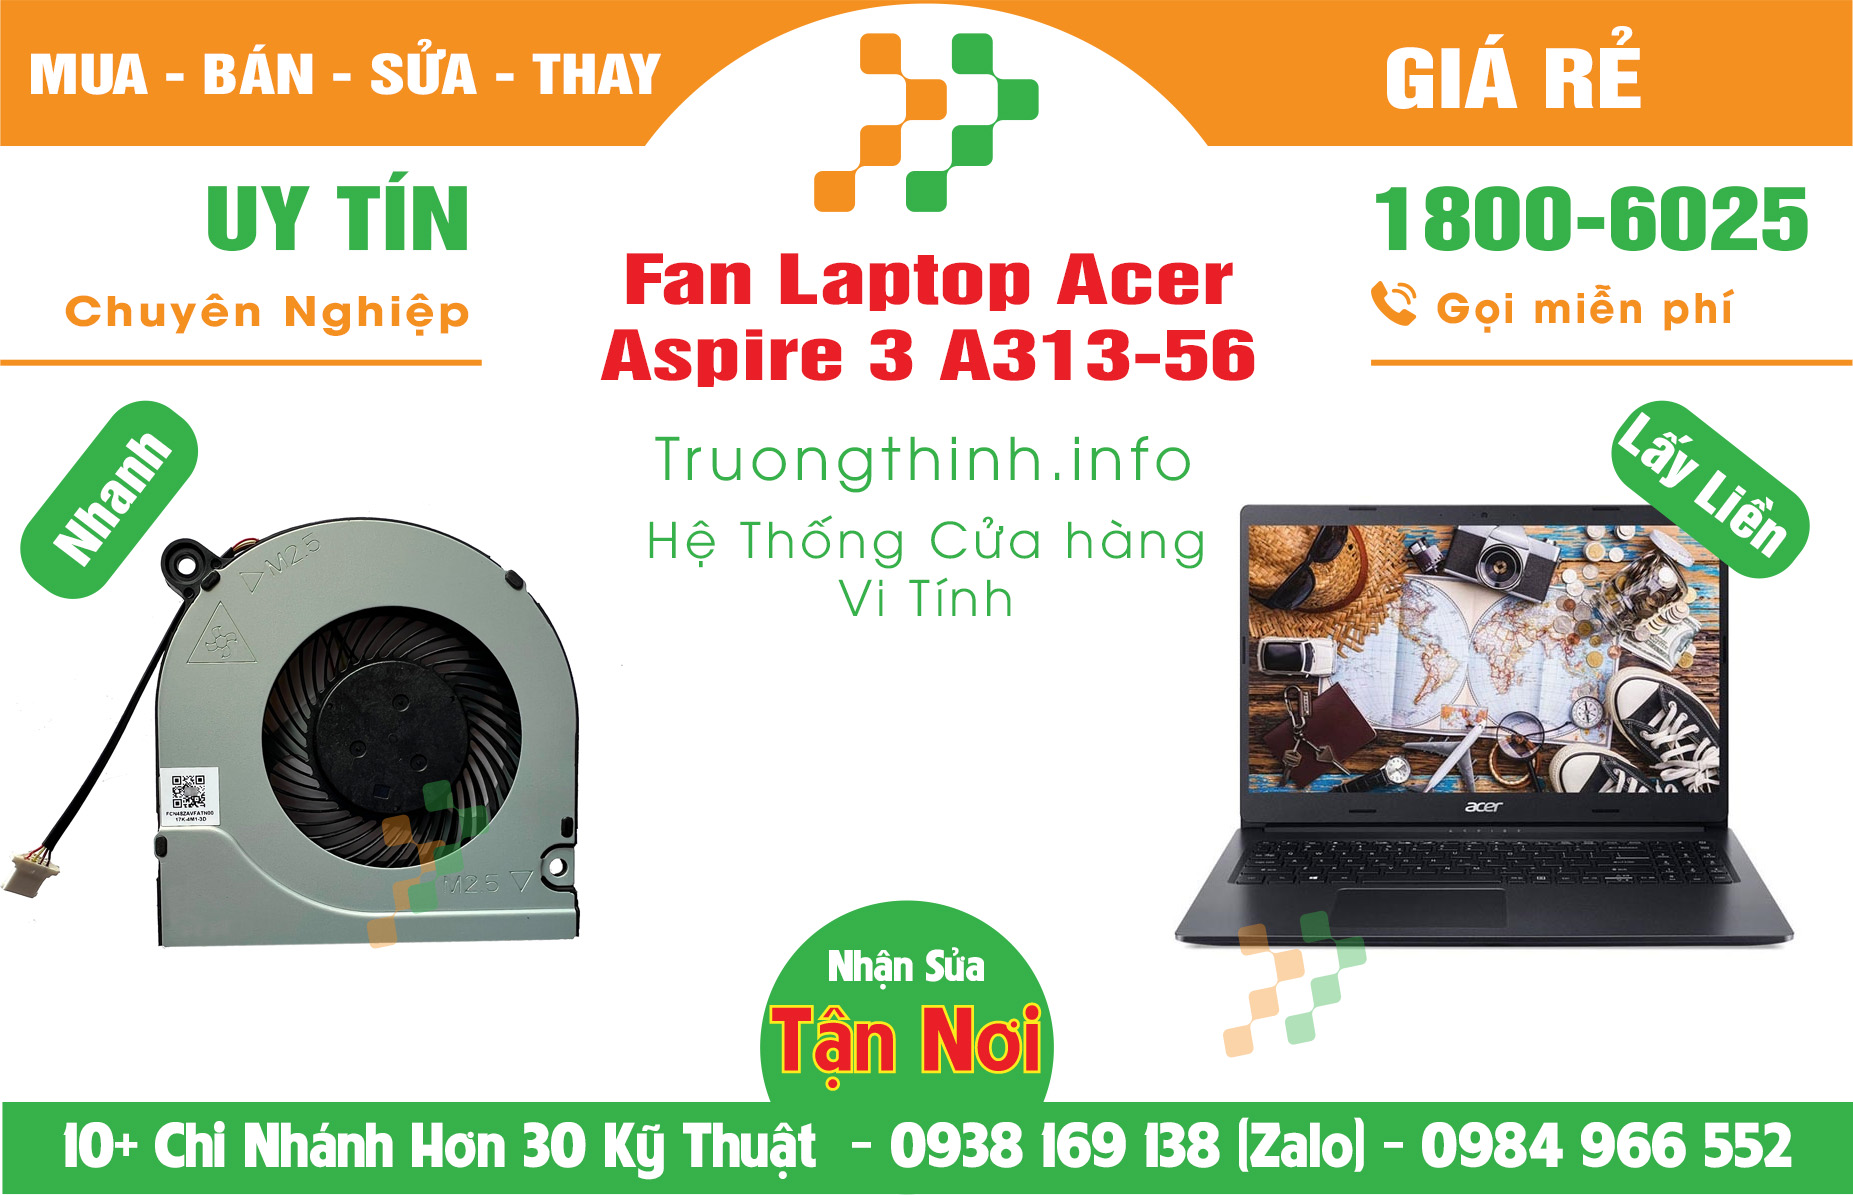 Mua Bán Vỏ Laptop Acer Aspire 3 A313-56 Giá Rẻ | Máy Tính Trường Thịnh Giá Rẻ